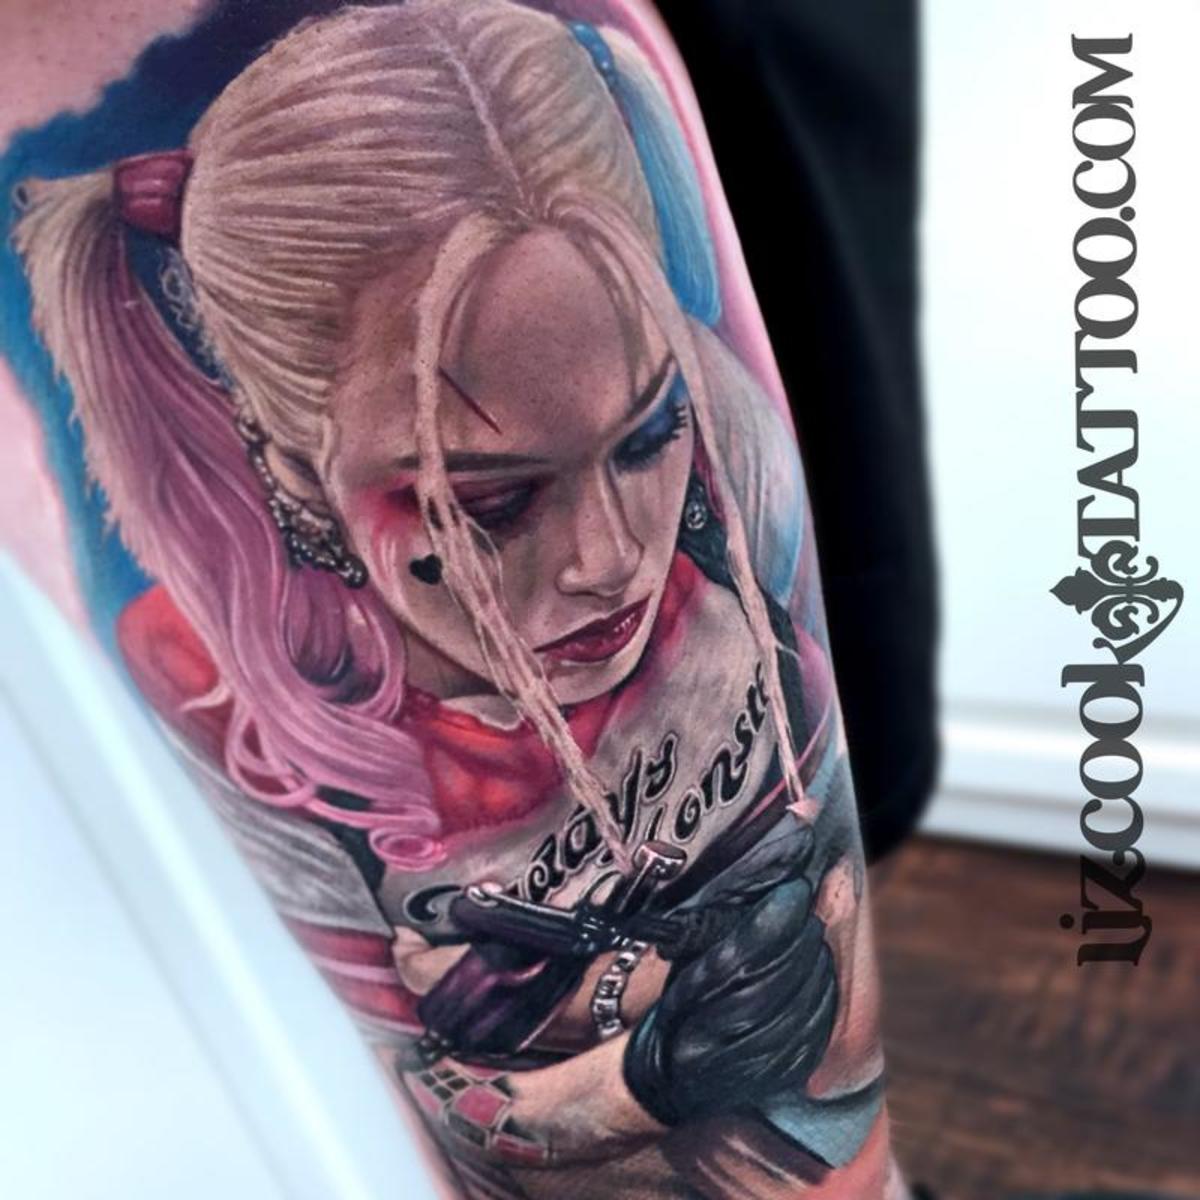 Harley Quinn Margot Robbie Liz Cook Tattoo vannmerke